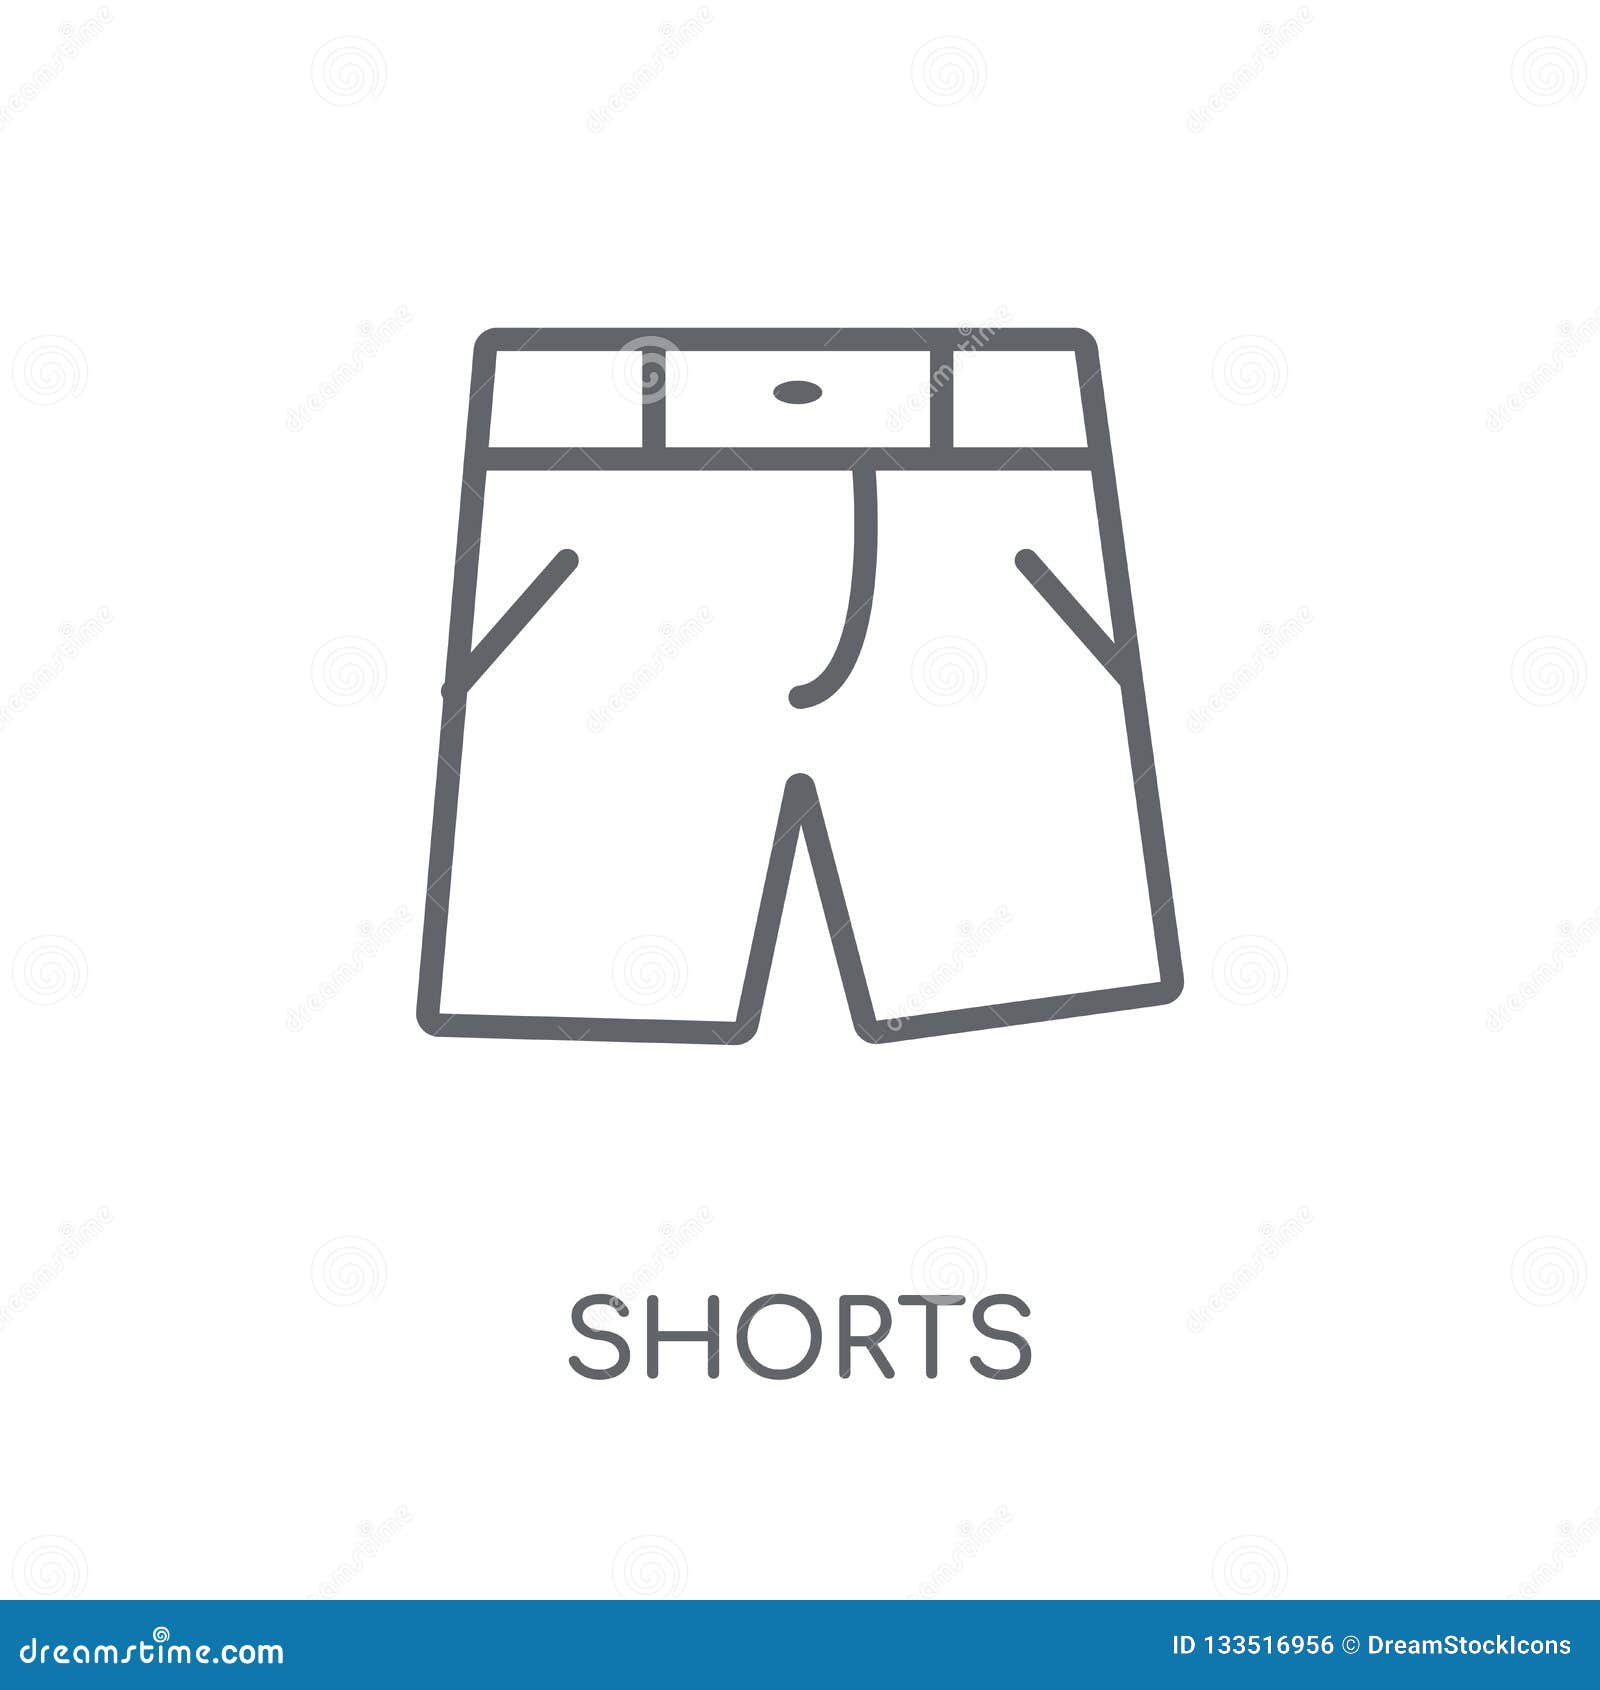 Честный знак шорты. Шорты значок. Логотип shorts. Cartoon short логотип. Расположение логотипа на шортах.